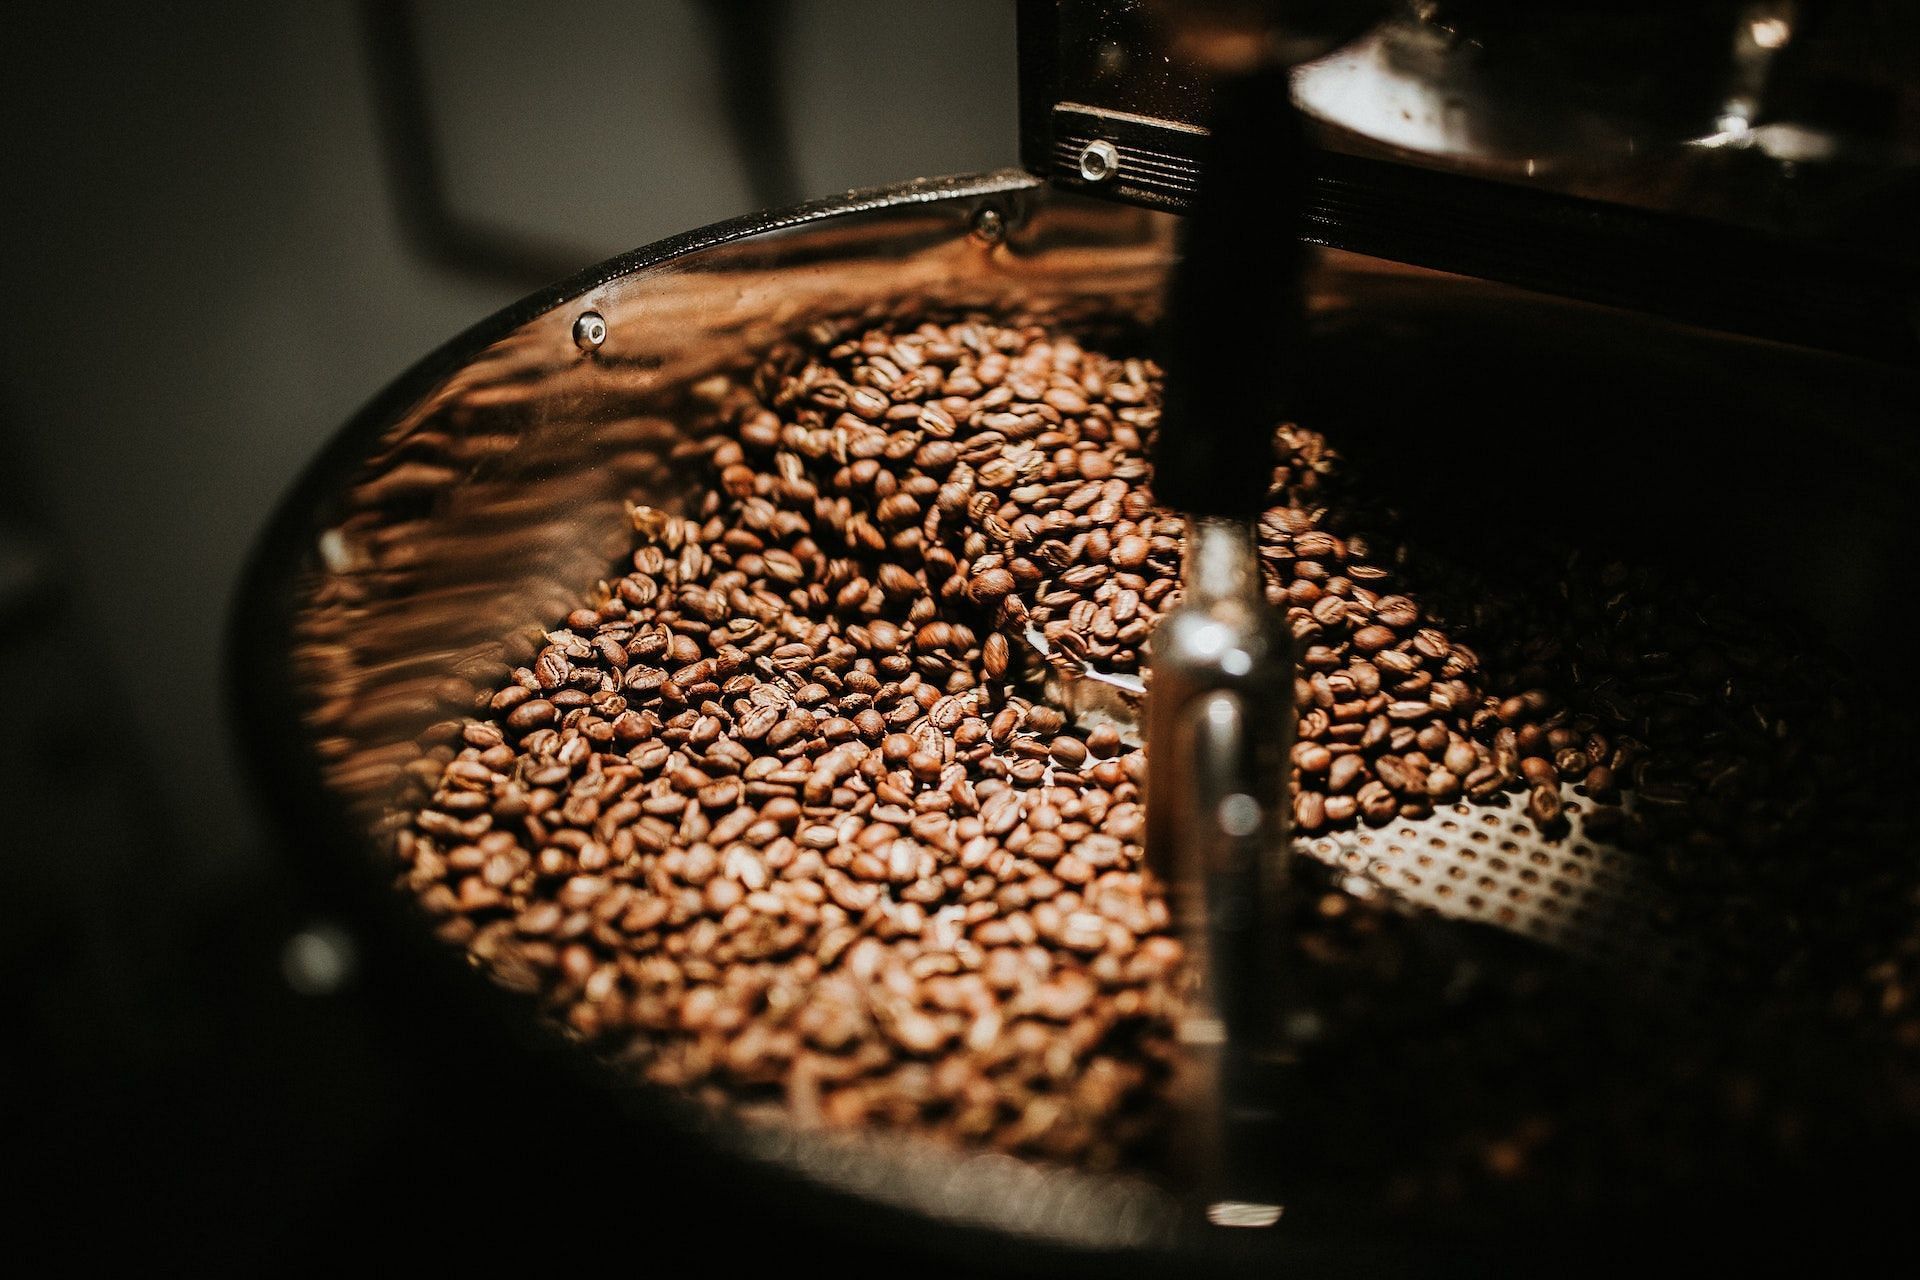 Cacao beans are milled into cacao powder. (Photo via Pexels/Juan Pablo Serrano Arenas)